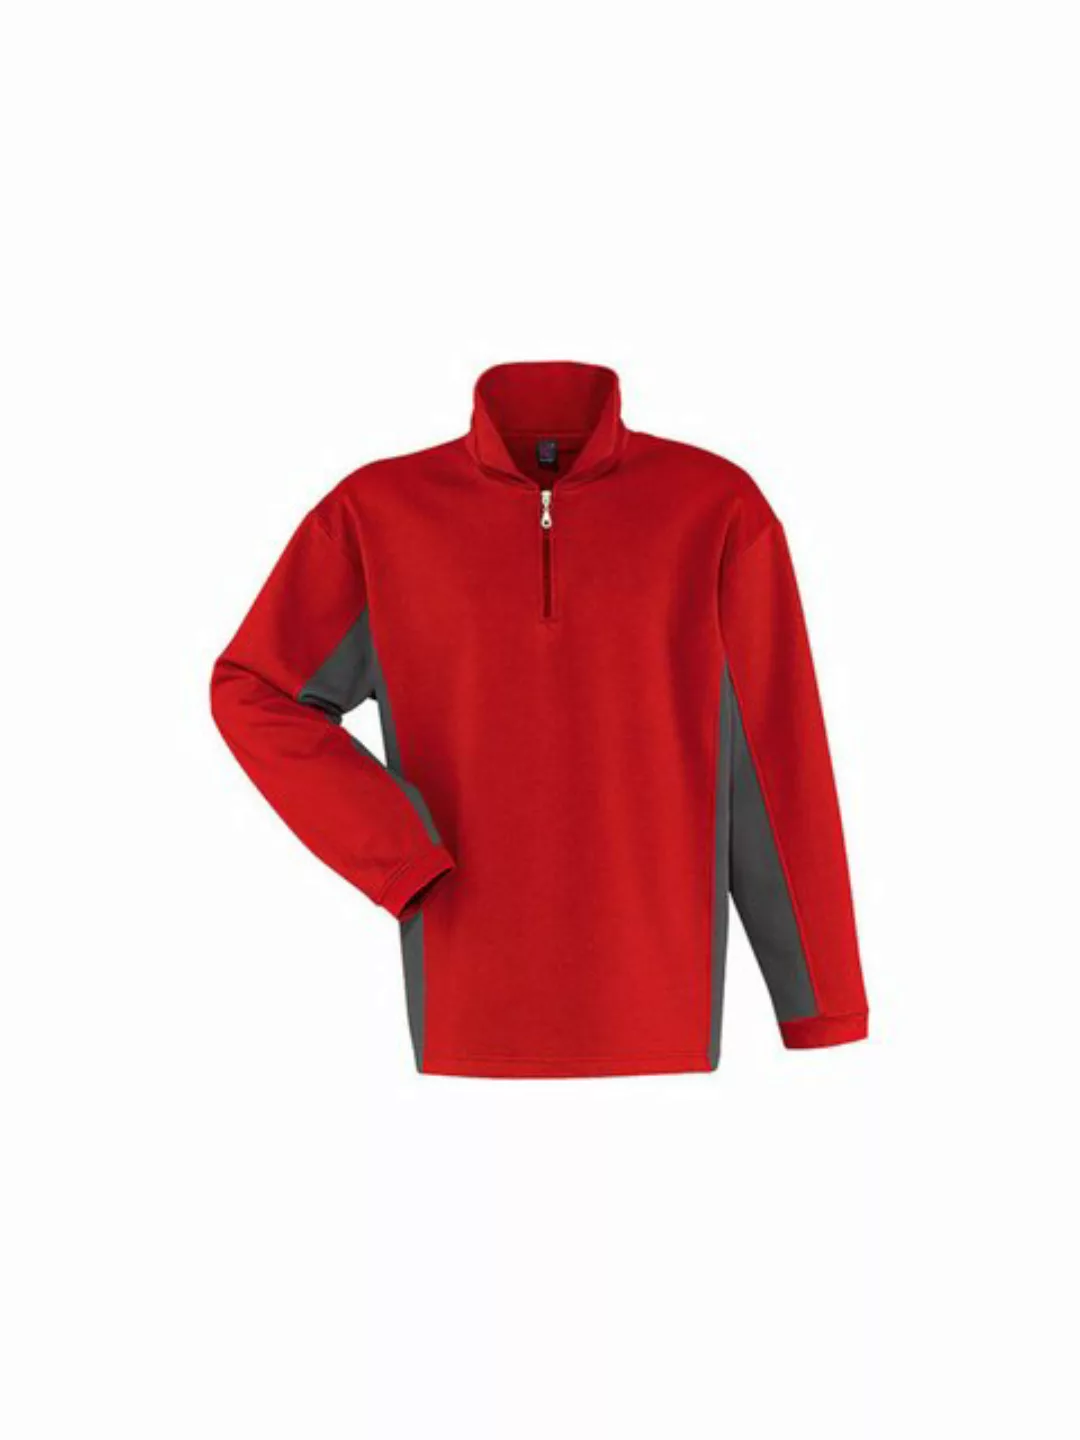 Kübler Sweater Kübler Shirt-Dress Sweatshirt rot/anthrazit günstig online kaufen